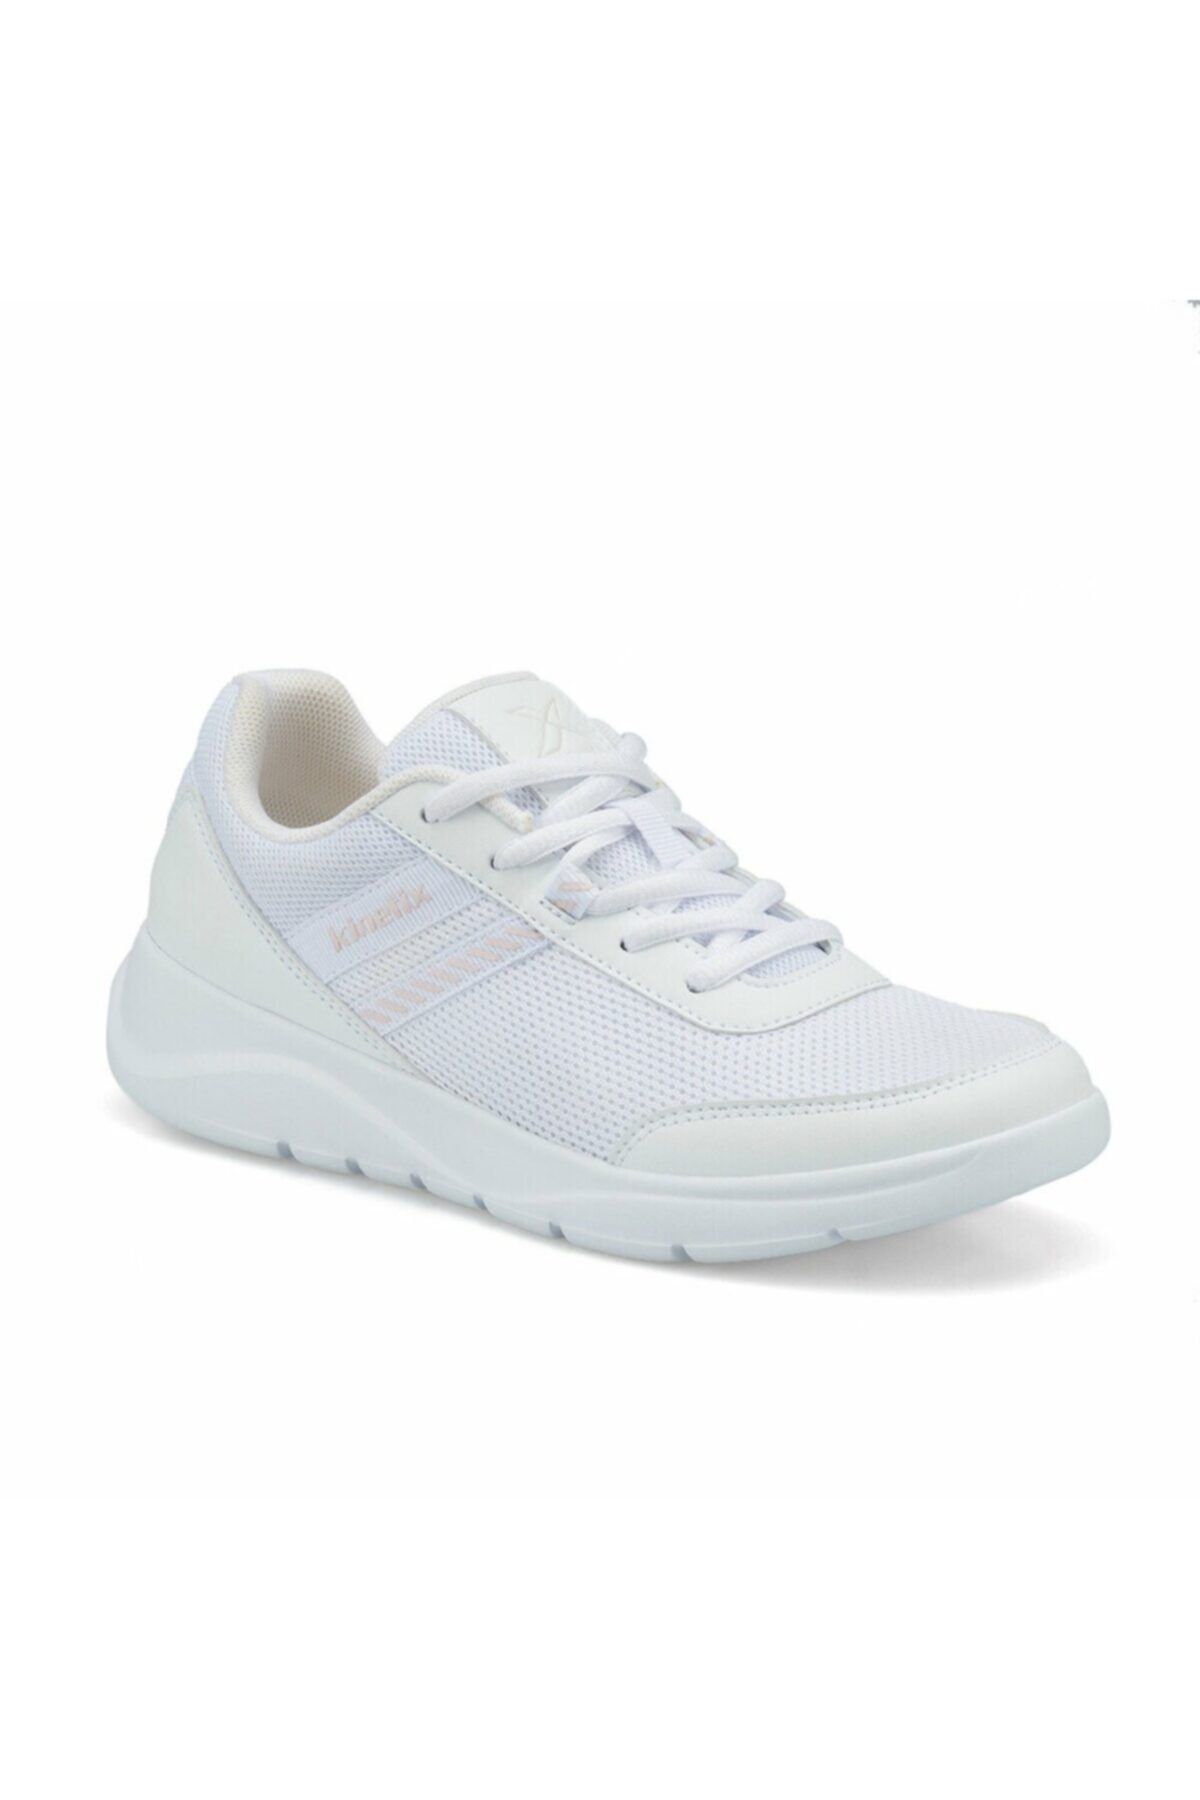 Kinetix VERAN MESH W Beyaz Kadın Sneaker Ayakkabı 100484537